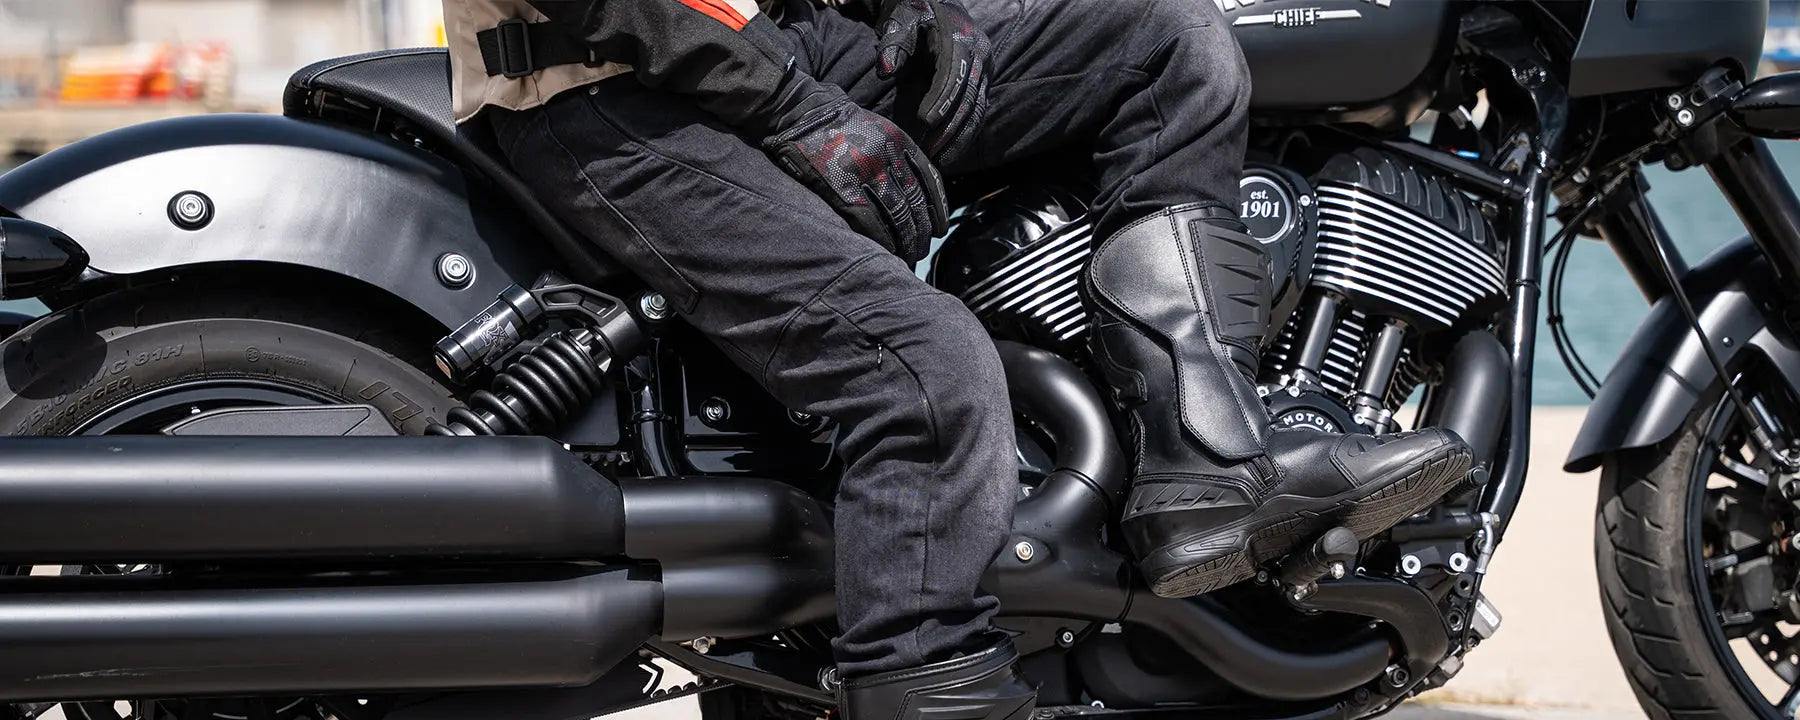 Kevlar Motorcycle Jeans UK - MaximomotoUK